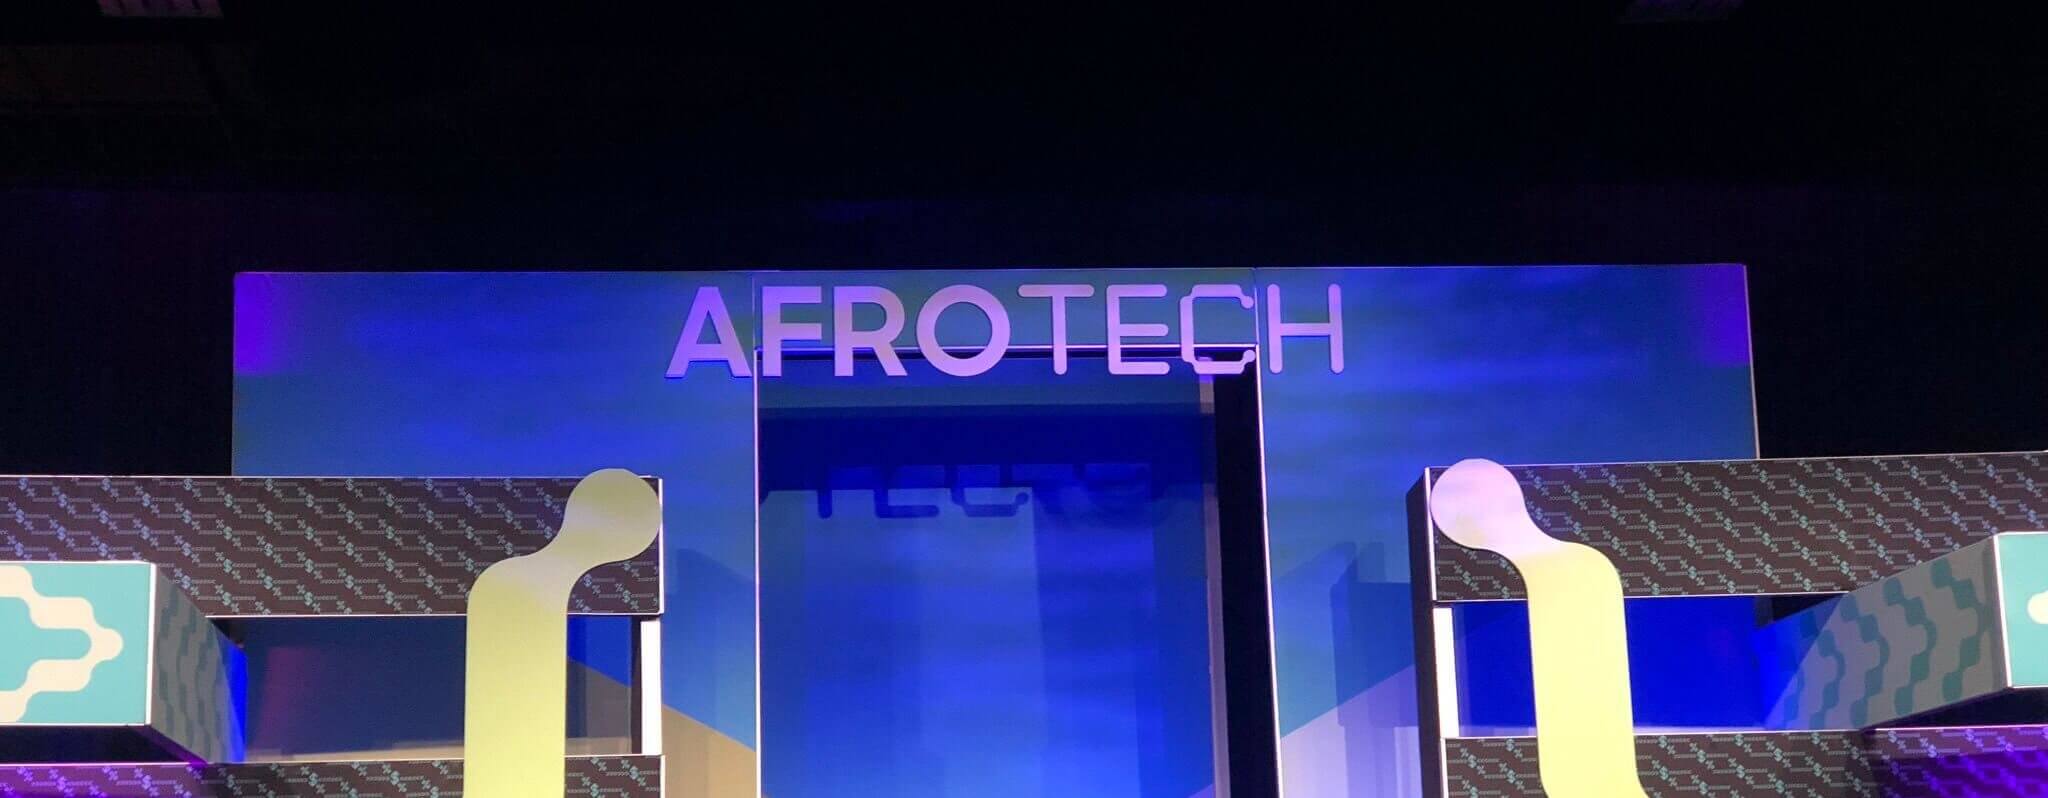 AfroTech 2019: Capacity’s Recap